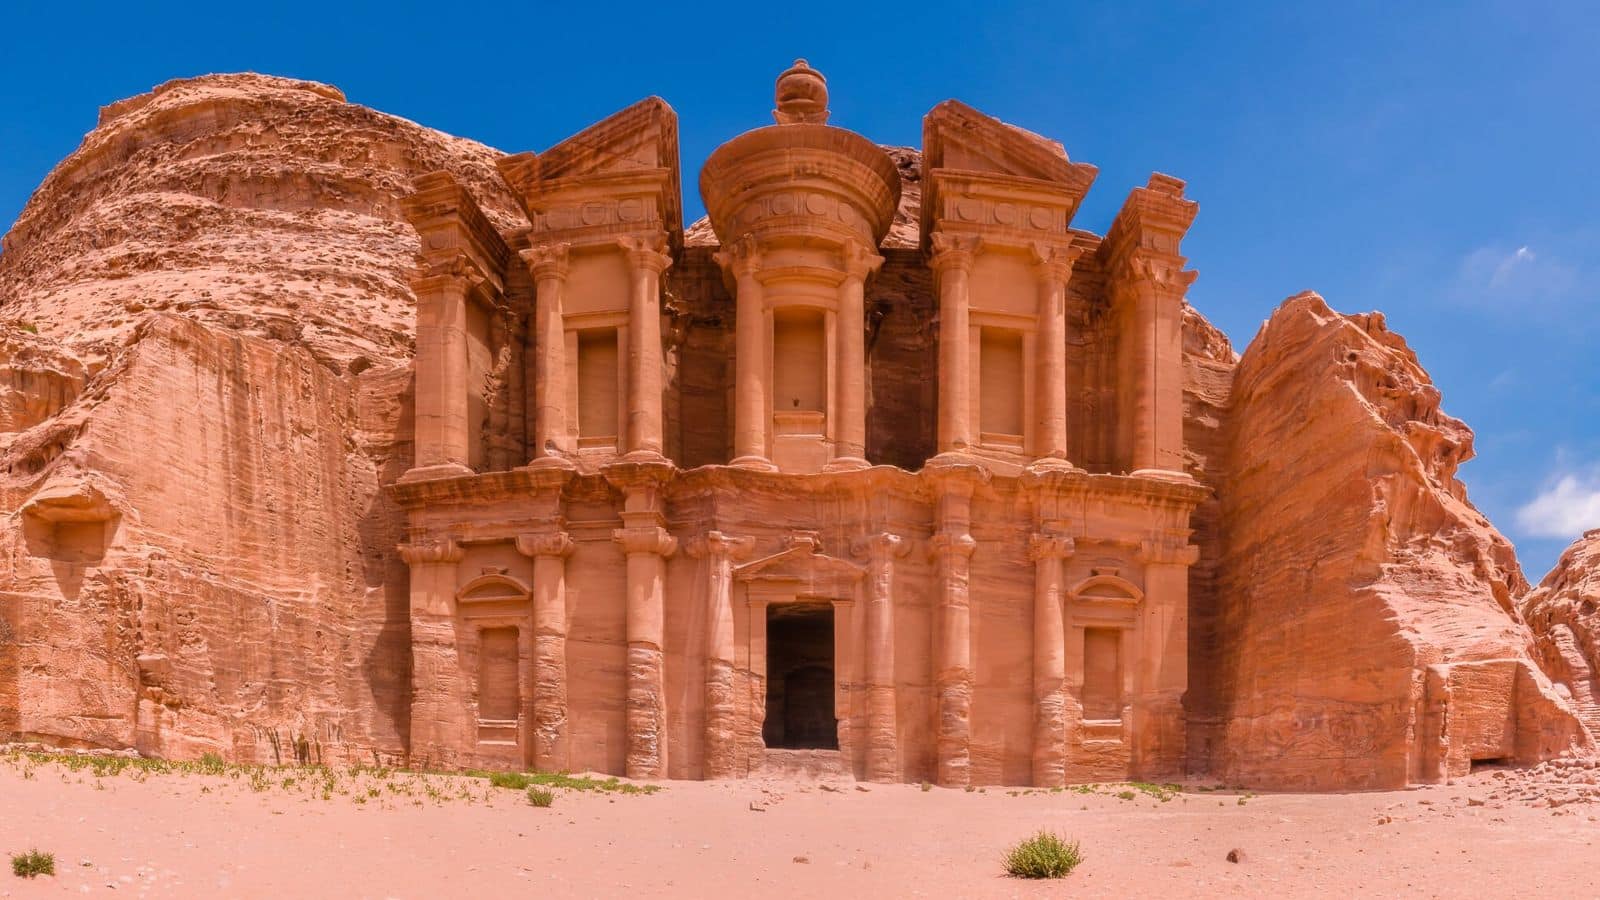 Head over to Petra, Jordan's ancient city